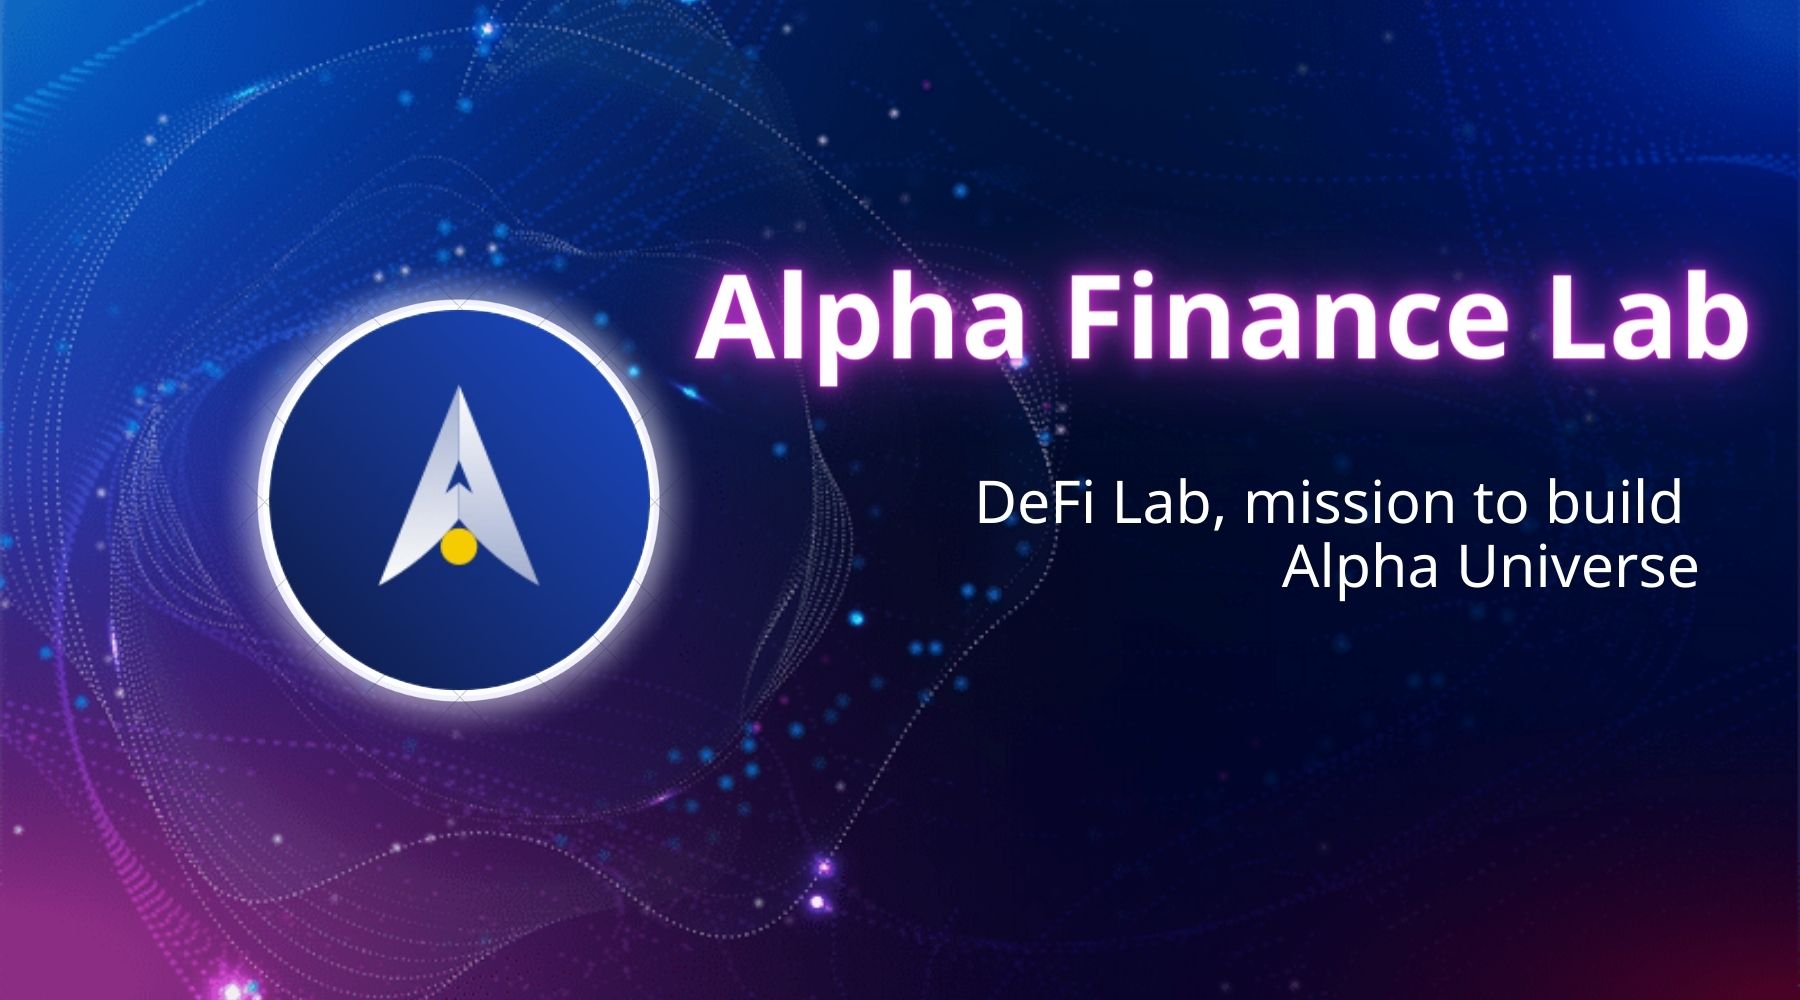 Cách tìm hiểu và đầu tư vào Alpha Network?